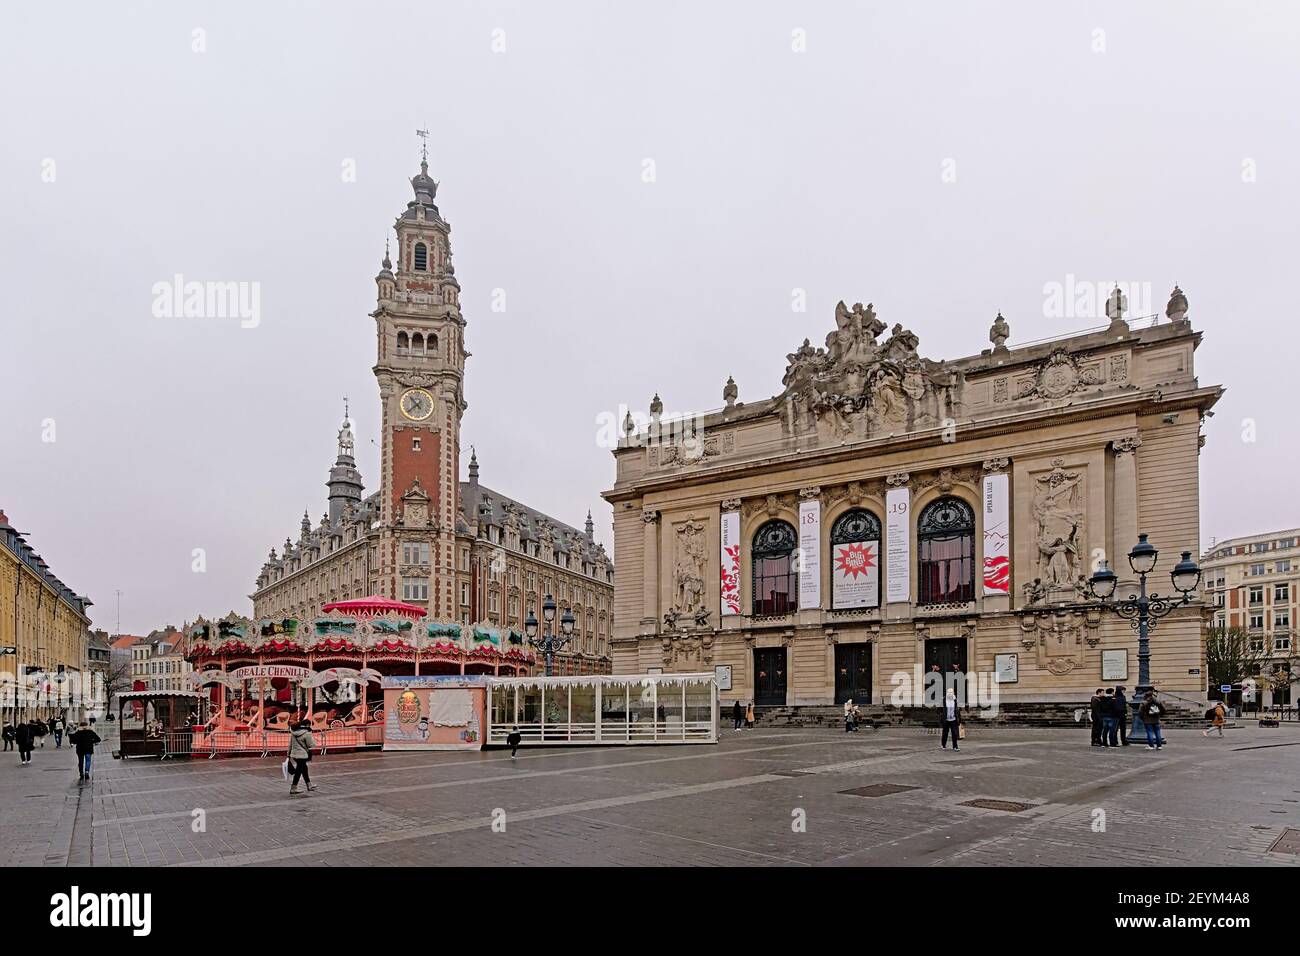 Chambre de commerce and opera building on theatre square in Lille Stock Photo